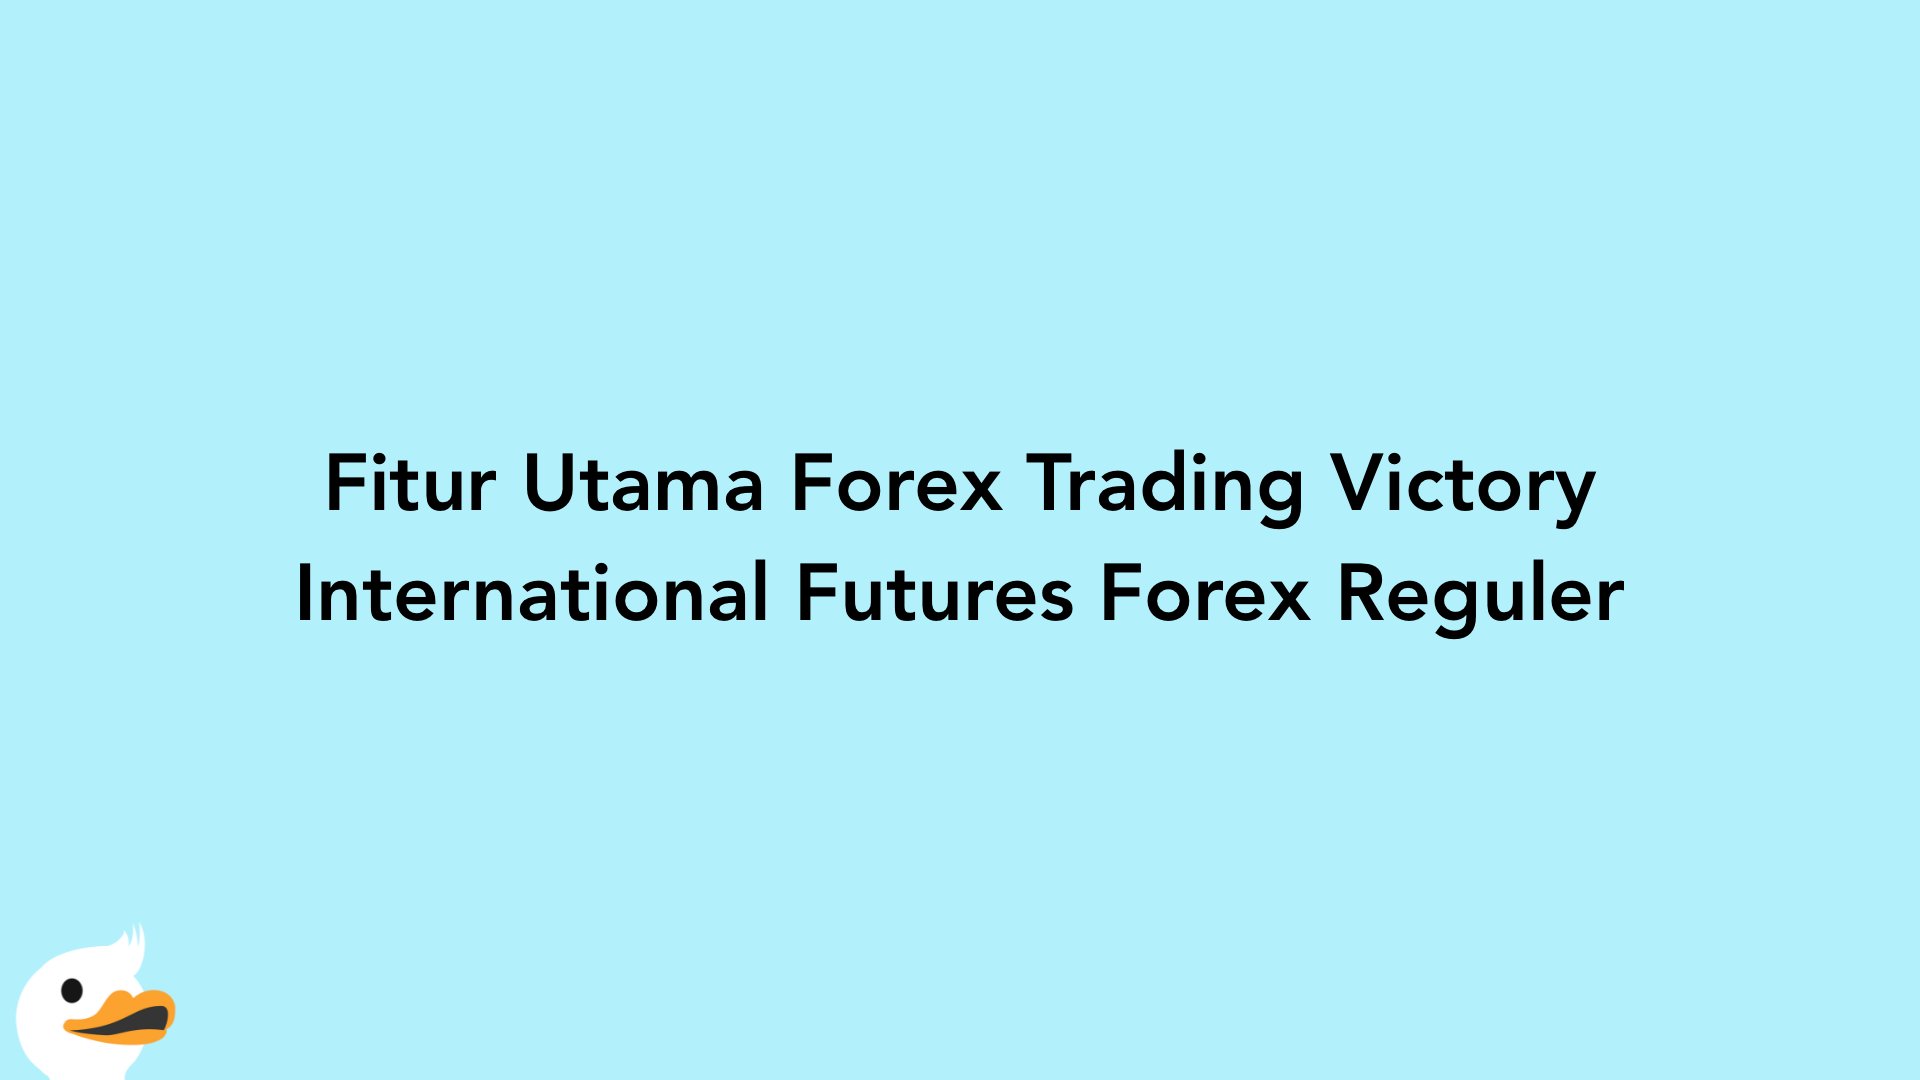 Fitur Utama Forex Trading Victory International Futures Forex Reguler